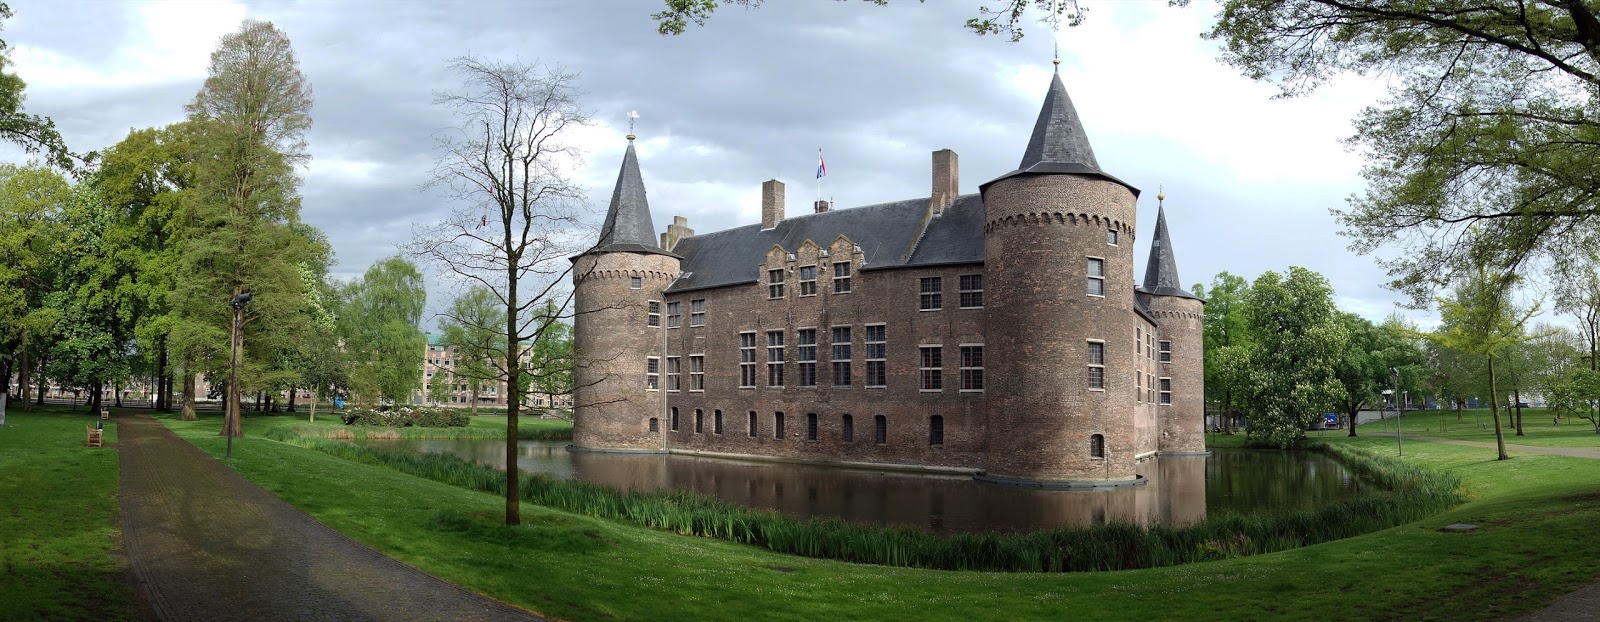 Dutch Castles - Nederlandse kastelen: Kasteel Helmond (Noord-Brabant) - machtige aan de rand van de Hel